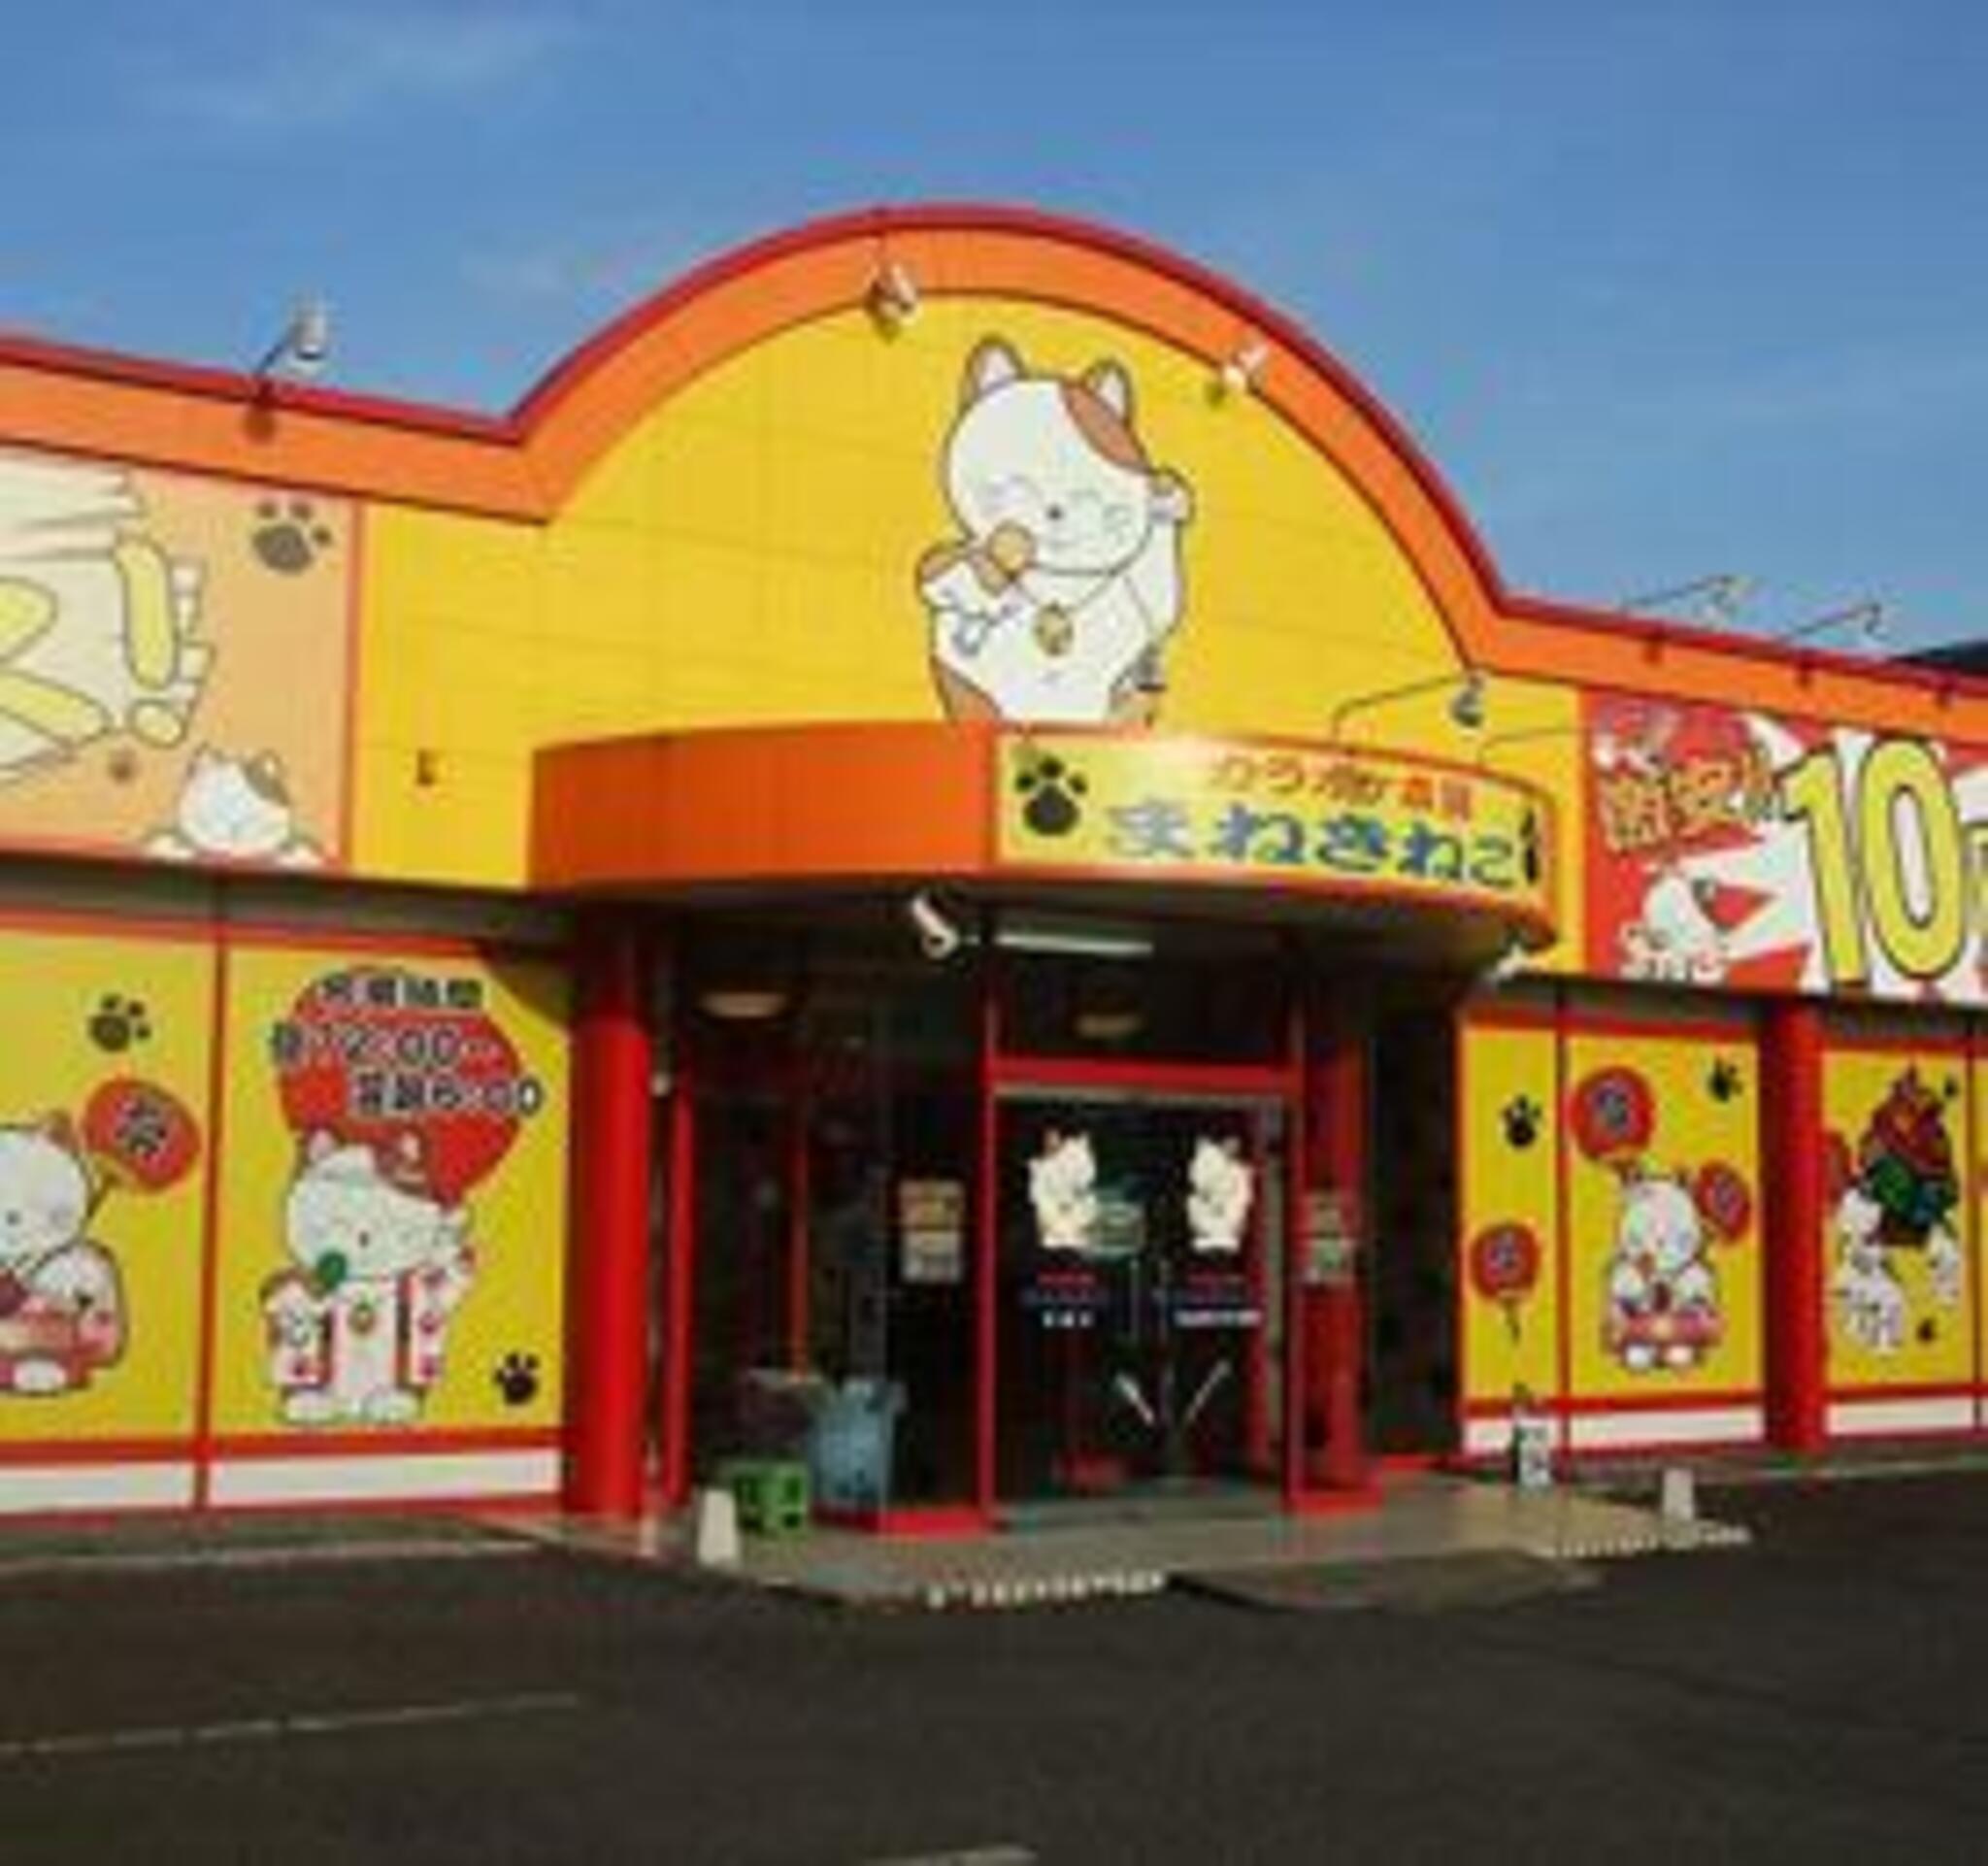 カラオケまねきねこ 岩瀬店 - 桜川市東桜川/カラオケ | Yahoo!マップ